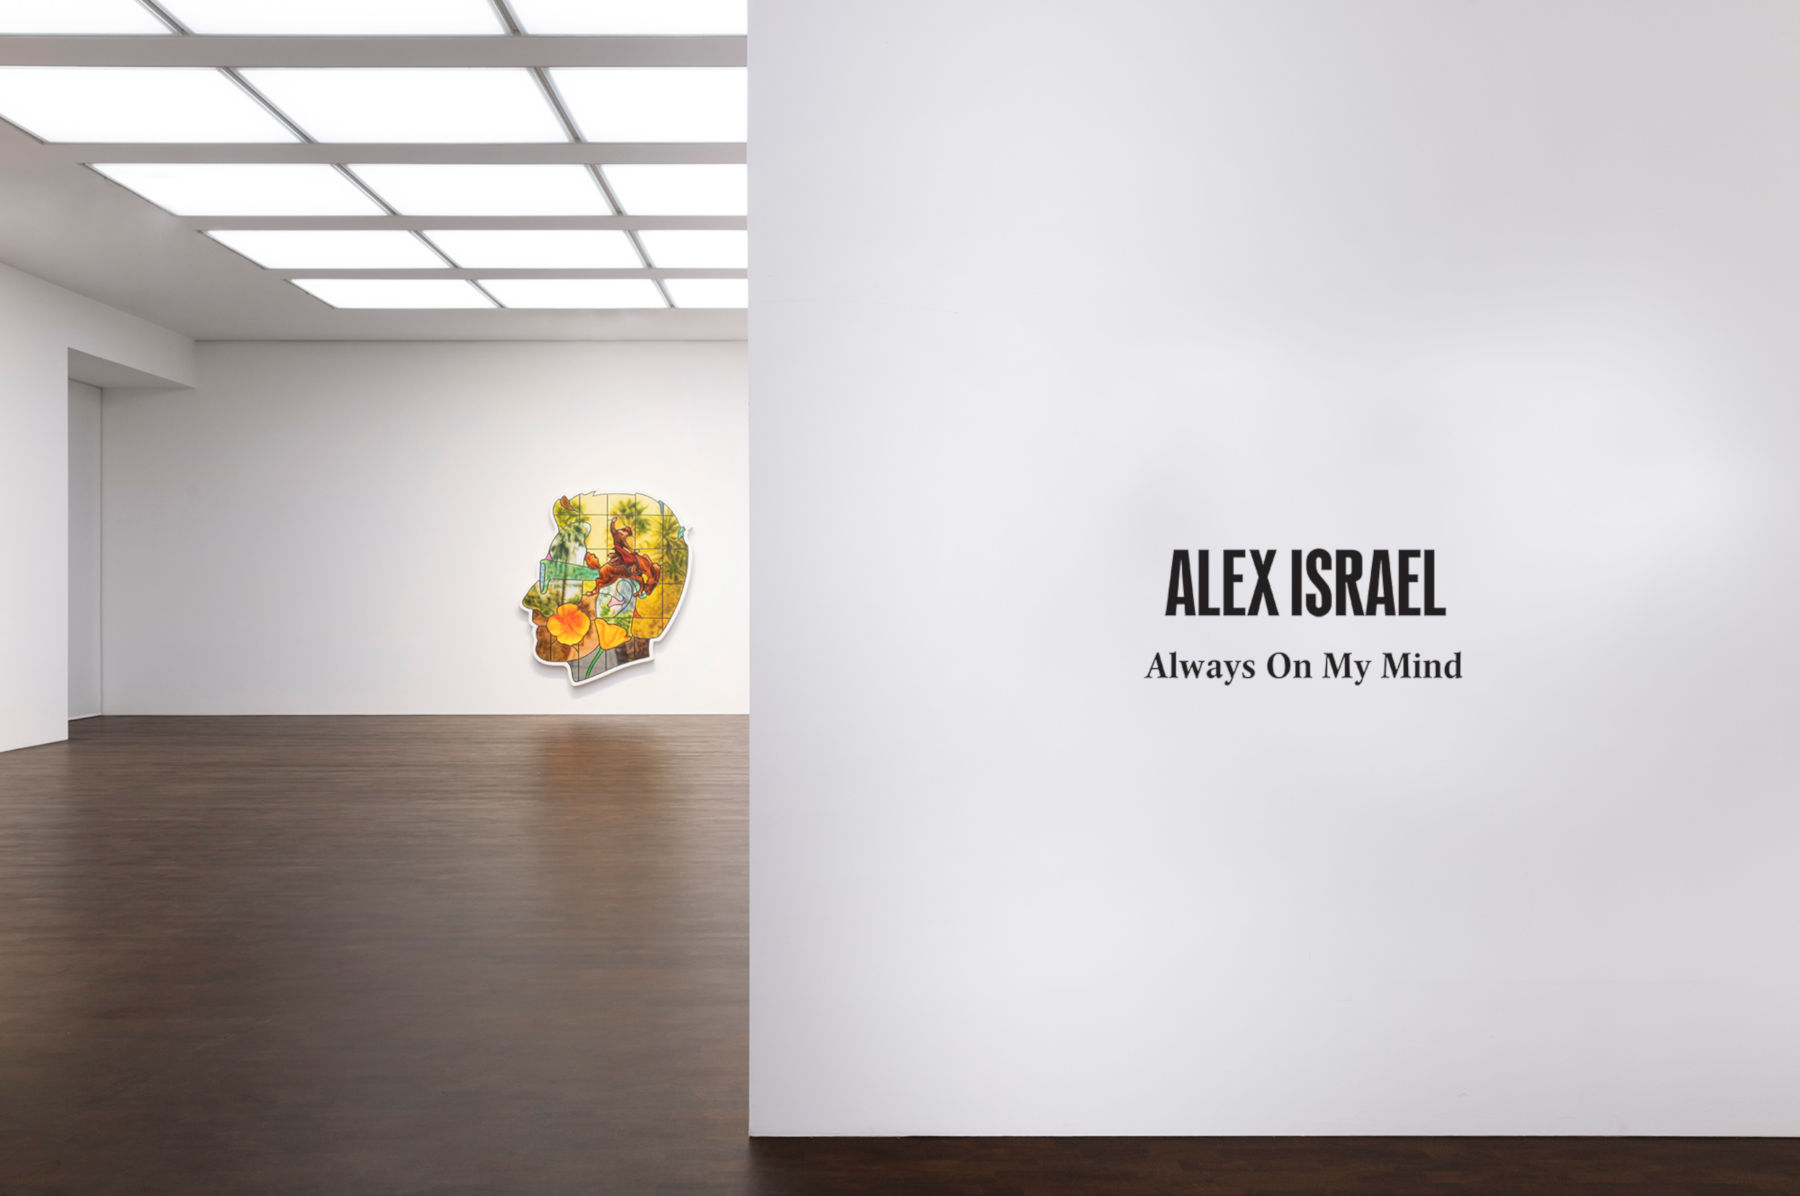 Alex Israel: Always On My Mind at Gagosian